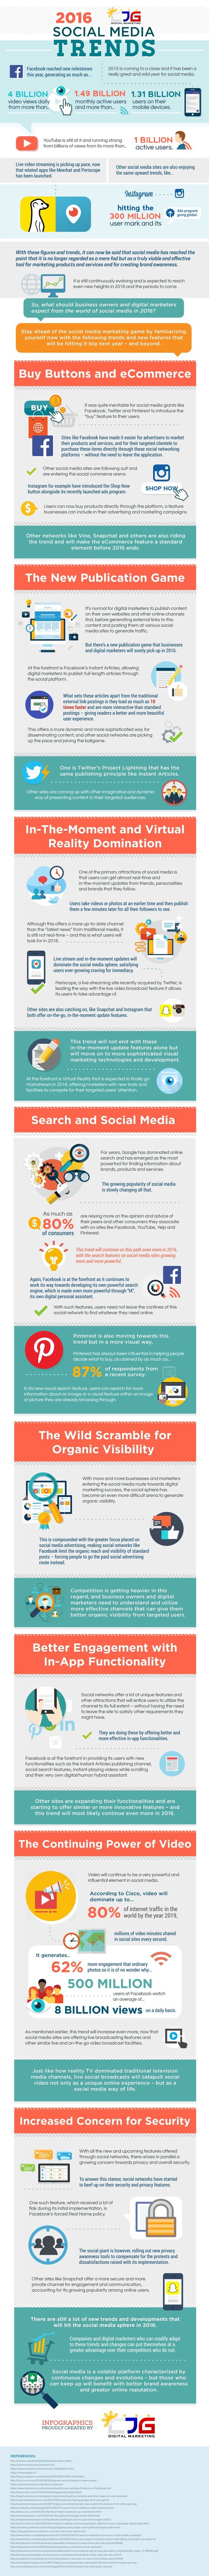 [Infographie] Quelles sont les tendances 2016 en matière de #socialmedia ? || 2016 Social Media Trends - #infographic #digital #marketing